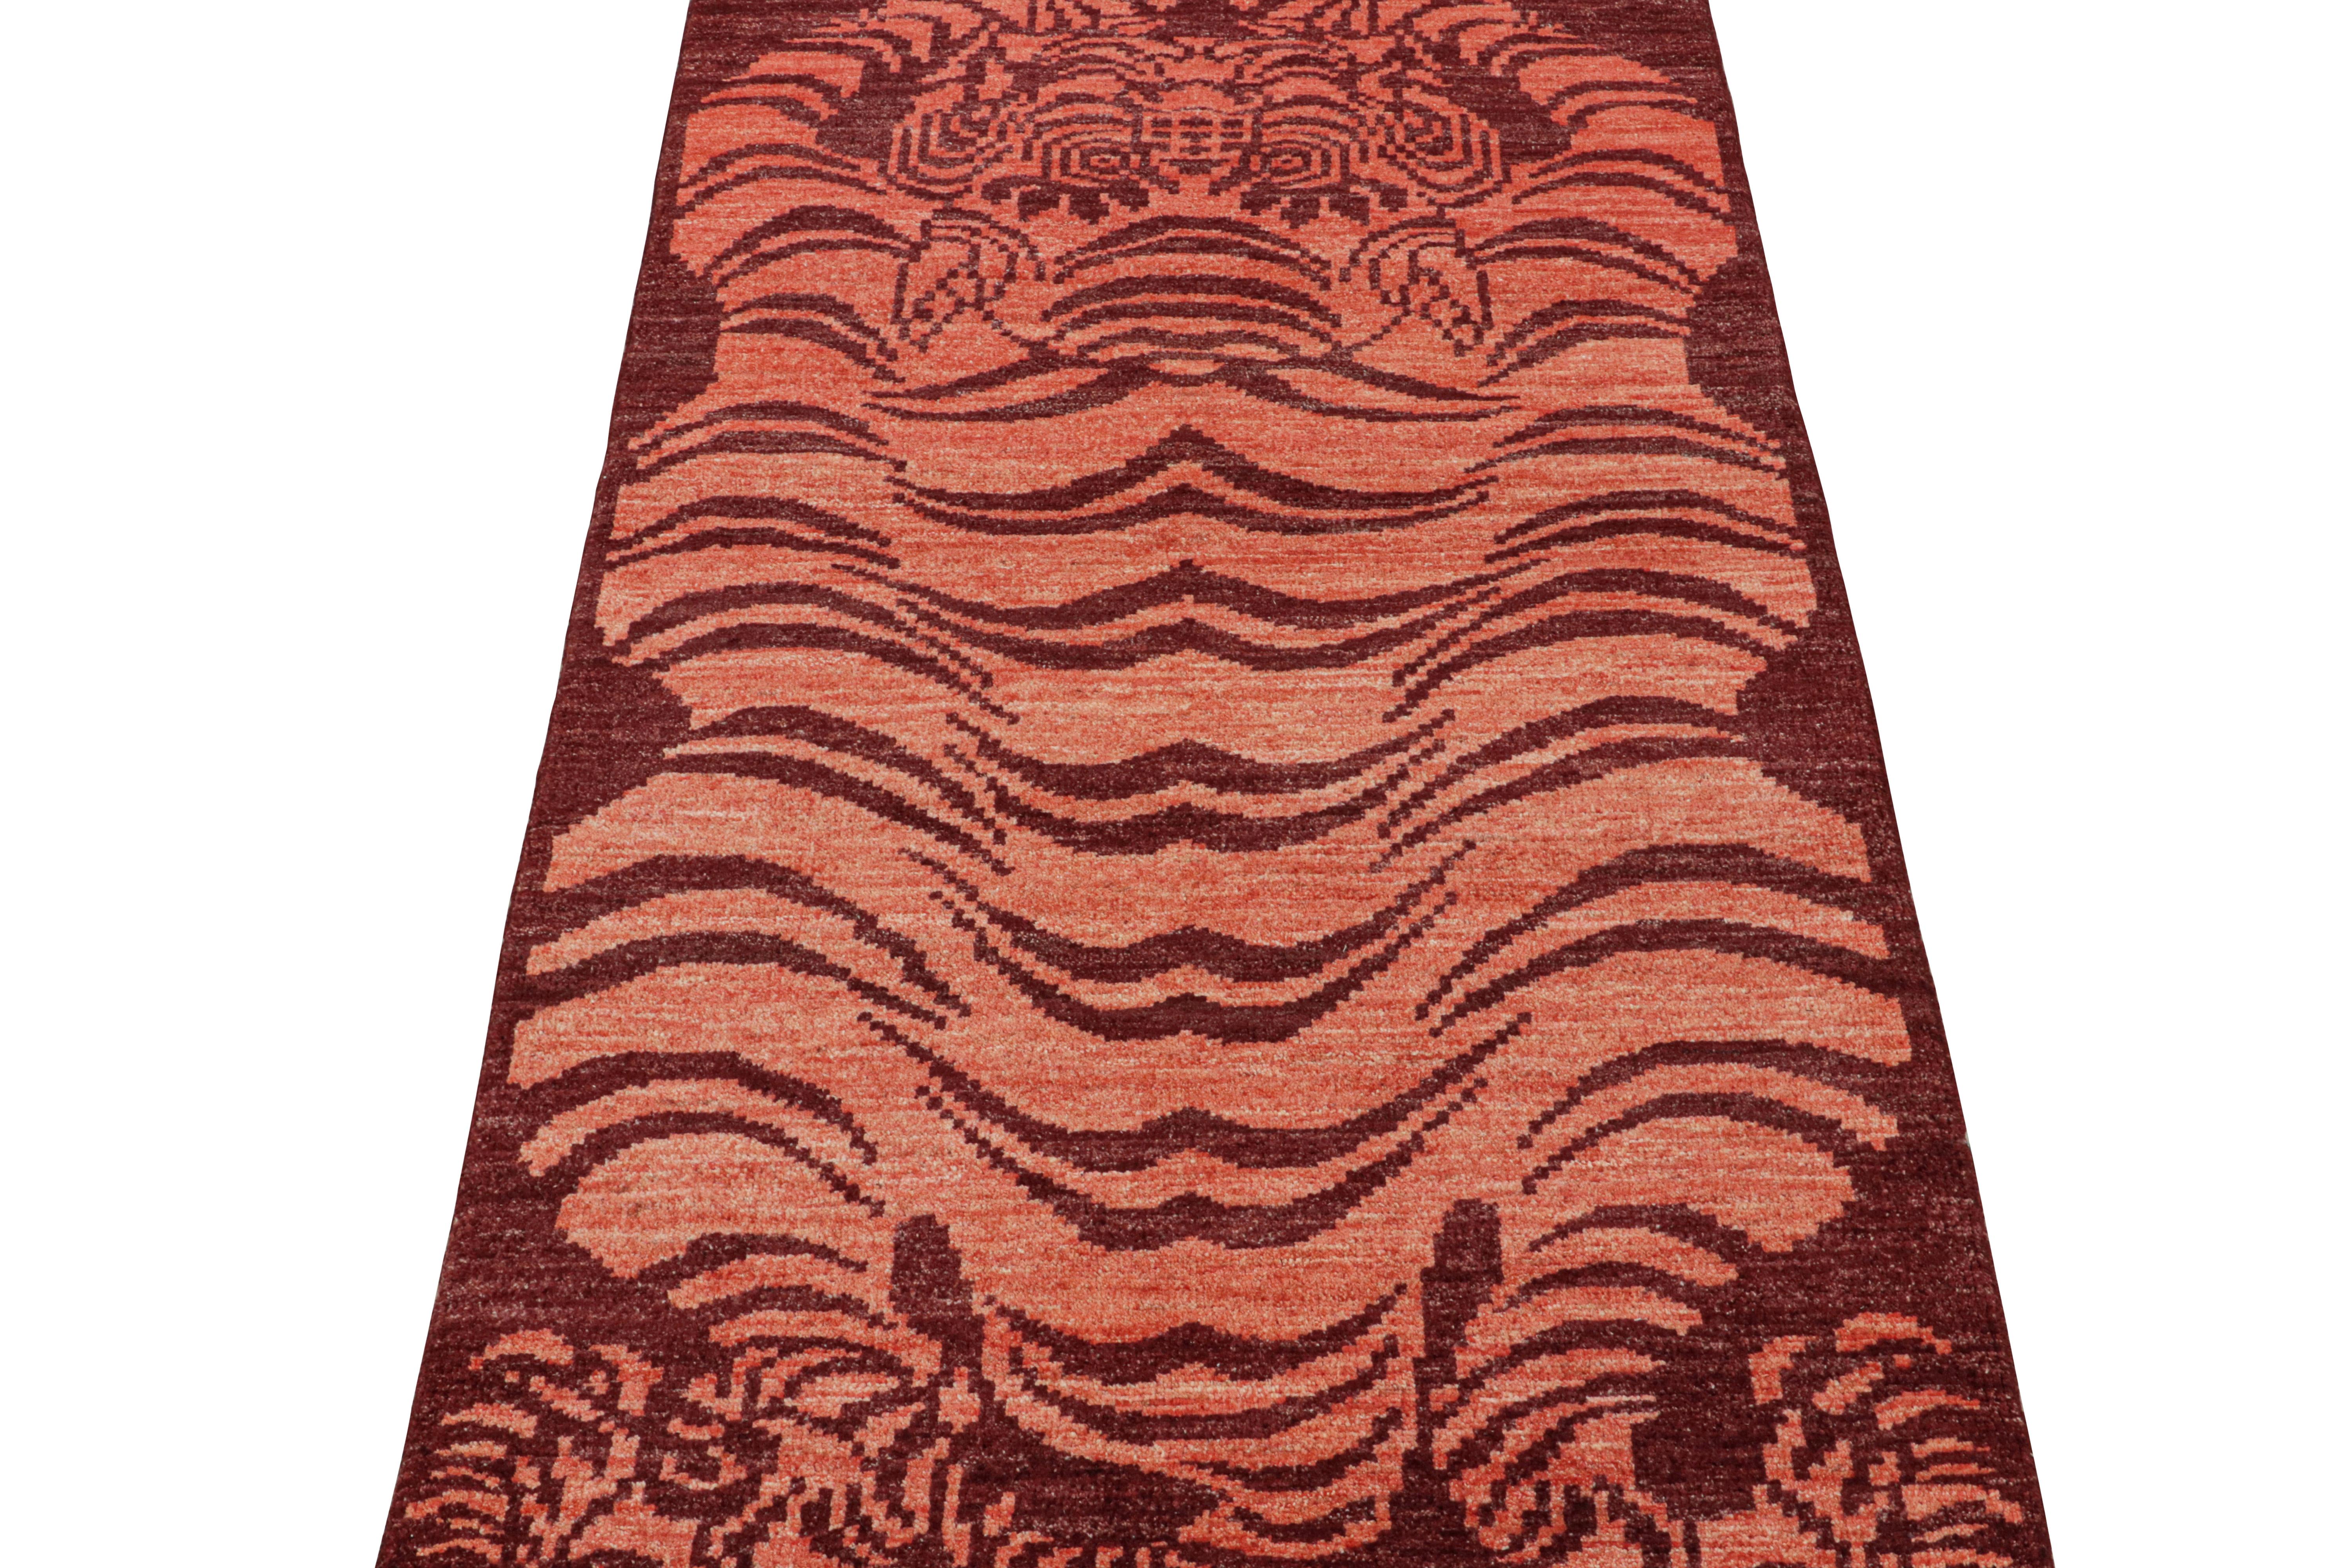 Ce tapis de course contemporain 3x6 est un nouvel ajout audacieux à la collection Tigers de Rug & Kilim. Notre Collectional couvre plusieurs cultures et reprend les styles picturaux emblématiques de l'art populaire et des tapis orientaux faits main.